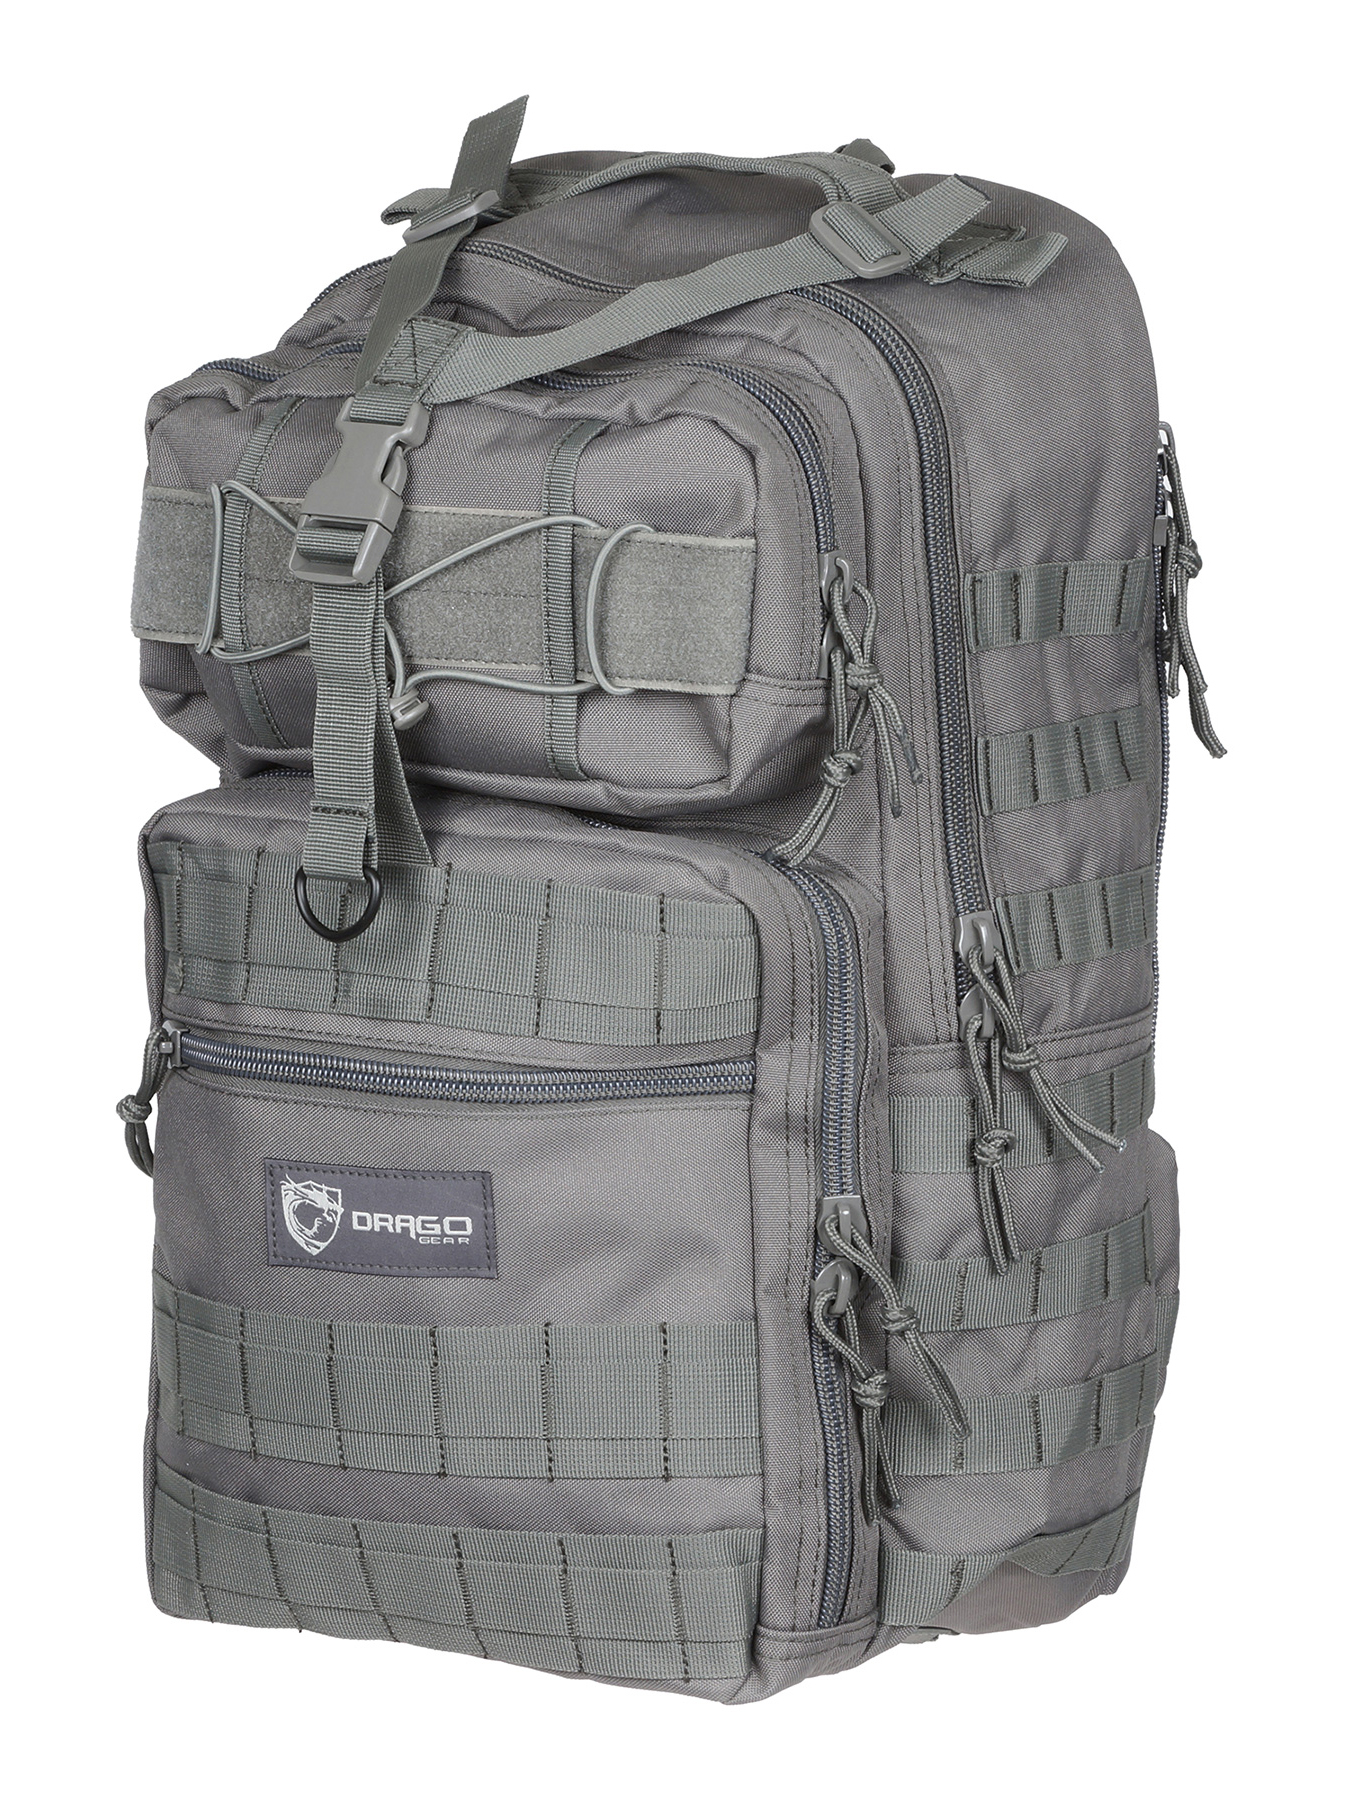 Рюкзак Драго Drago Gear. Рюкзак тактический Рубикон. Scout™ Backpack. XD Design Sling.